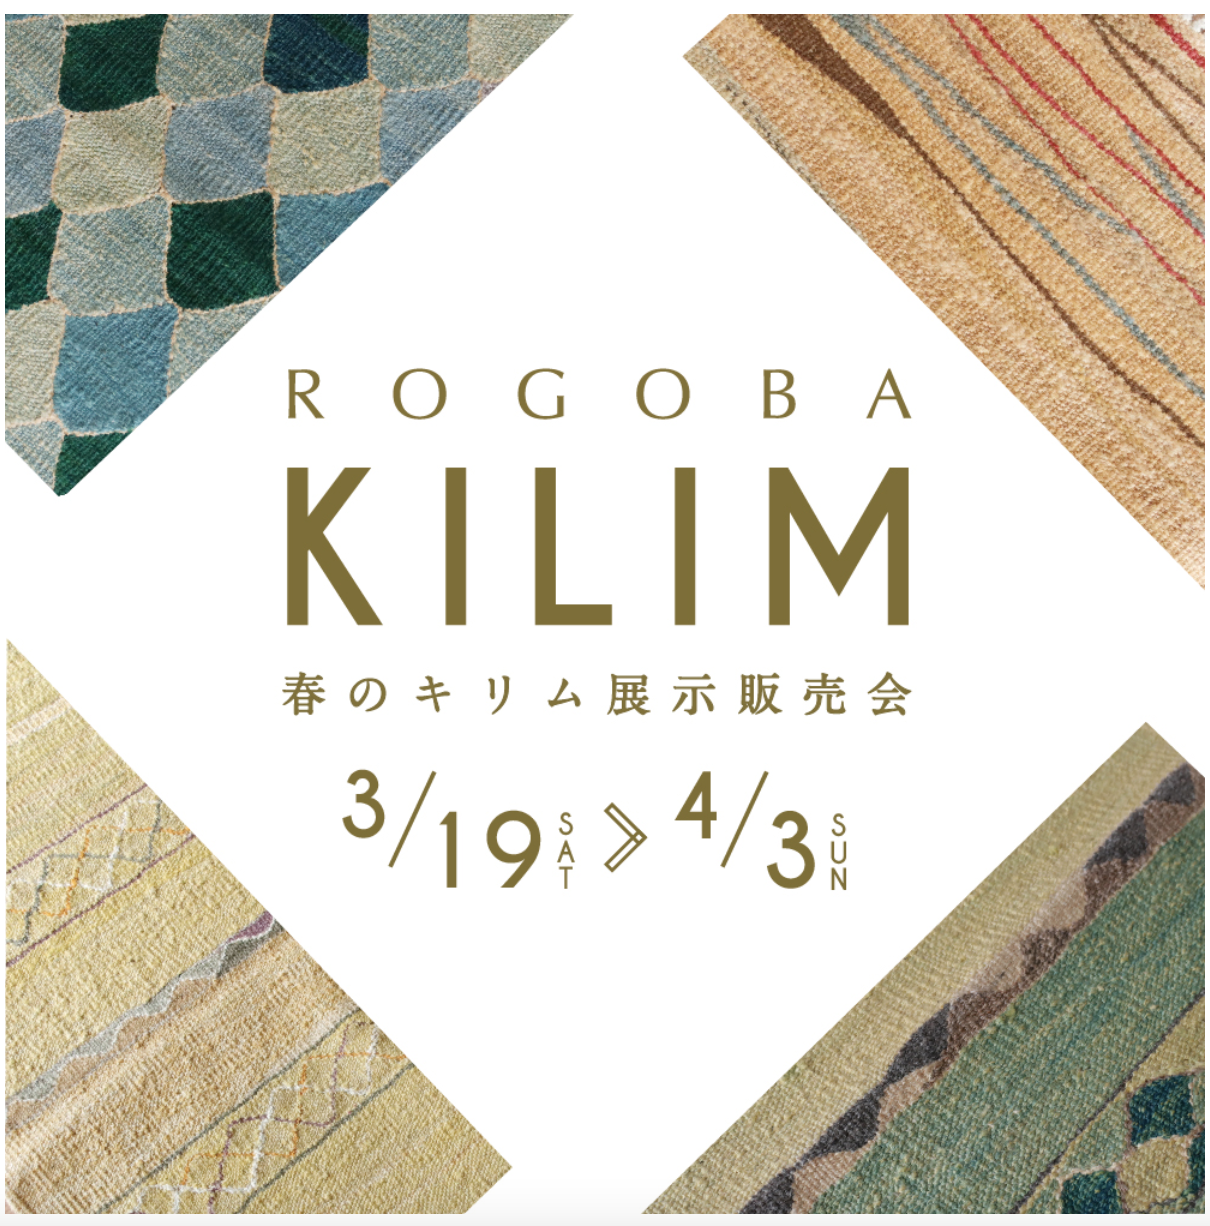 「ROGOBA KILIM ロゴバキリム」スペシャルトークイベント開催！＠春のキリム展示販売会